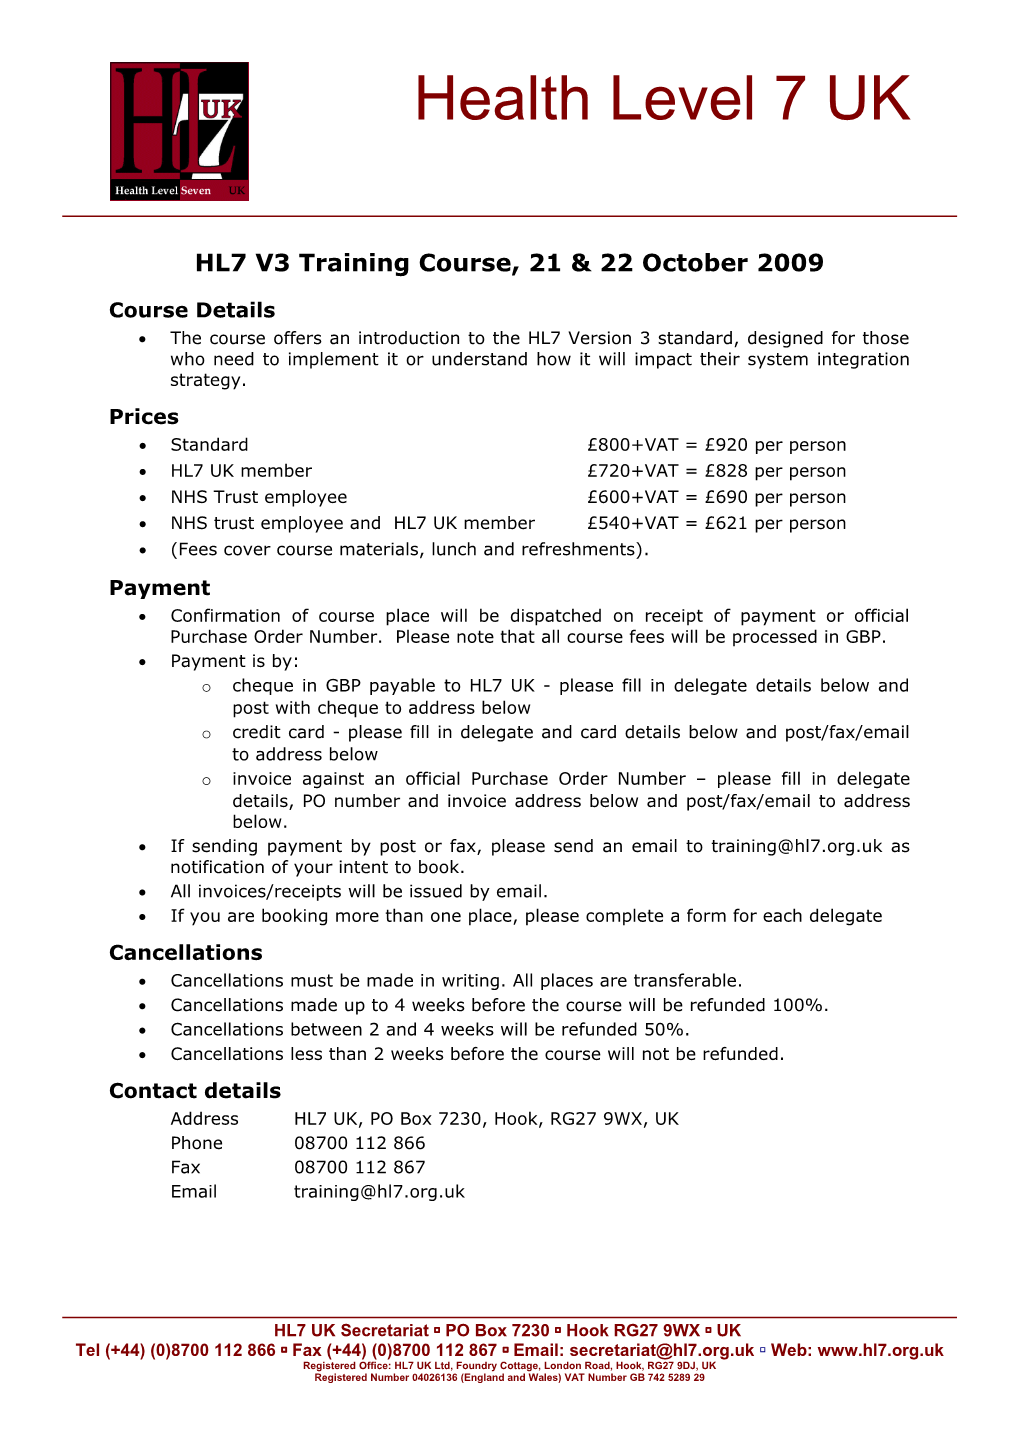 HL7 UK V3 Training Booking Form